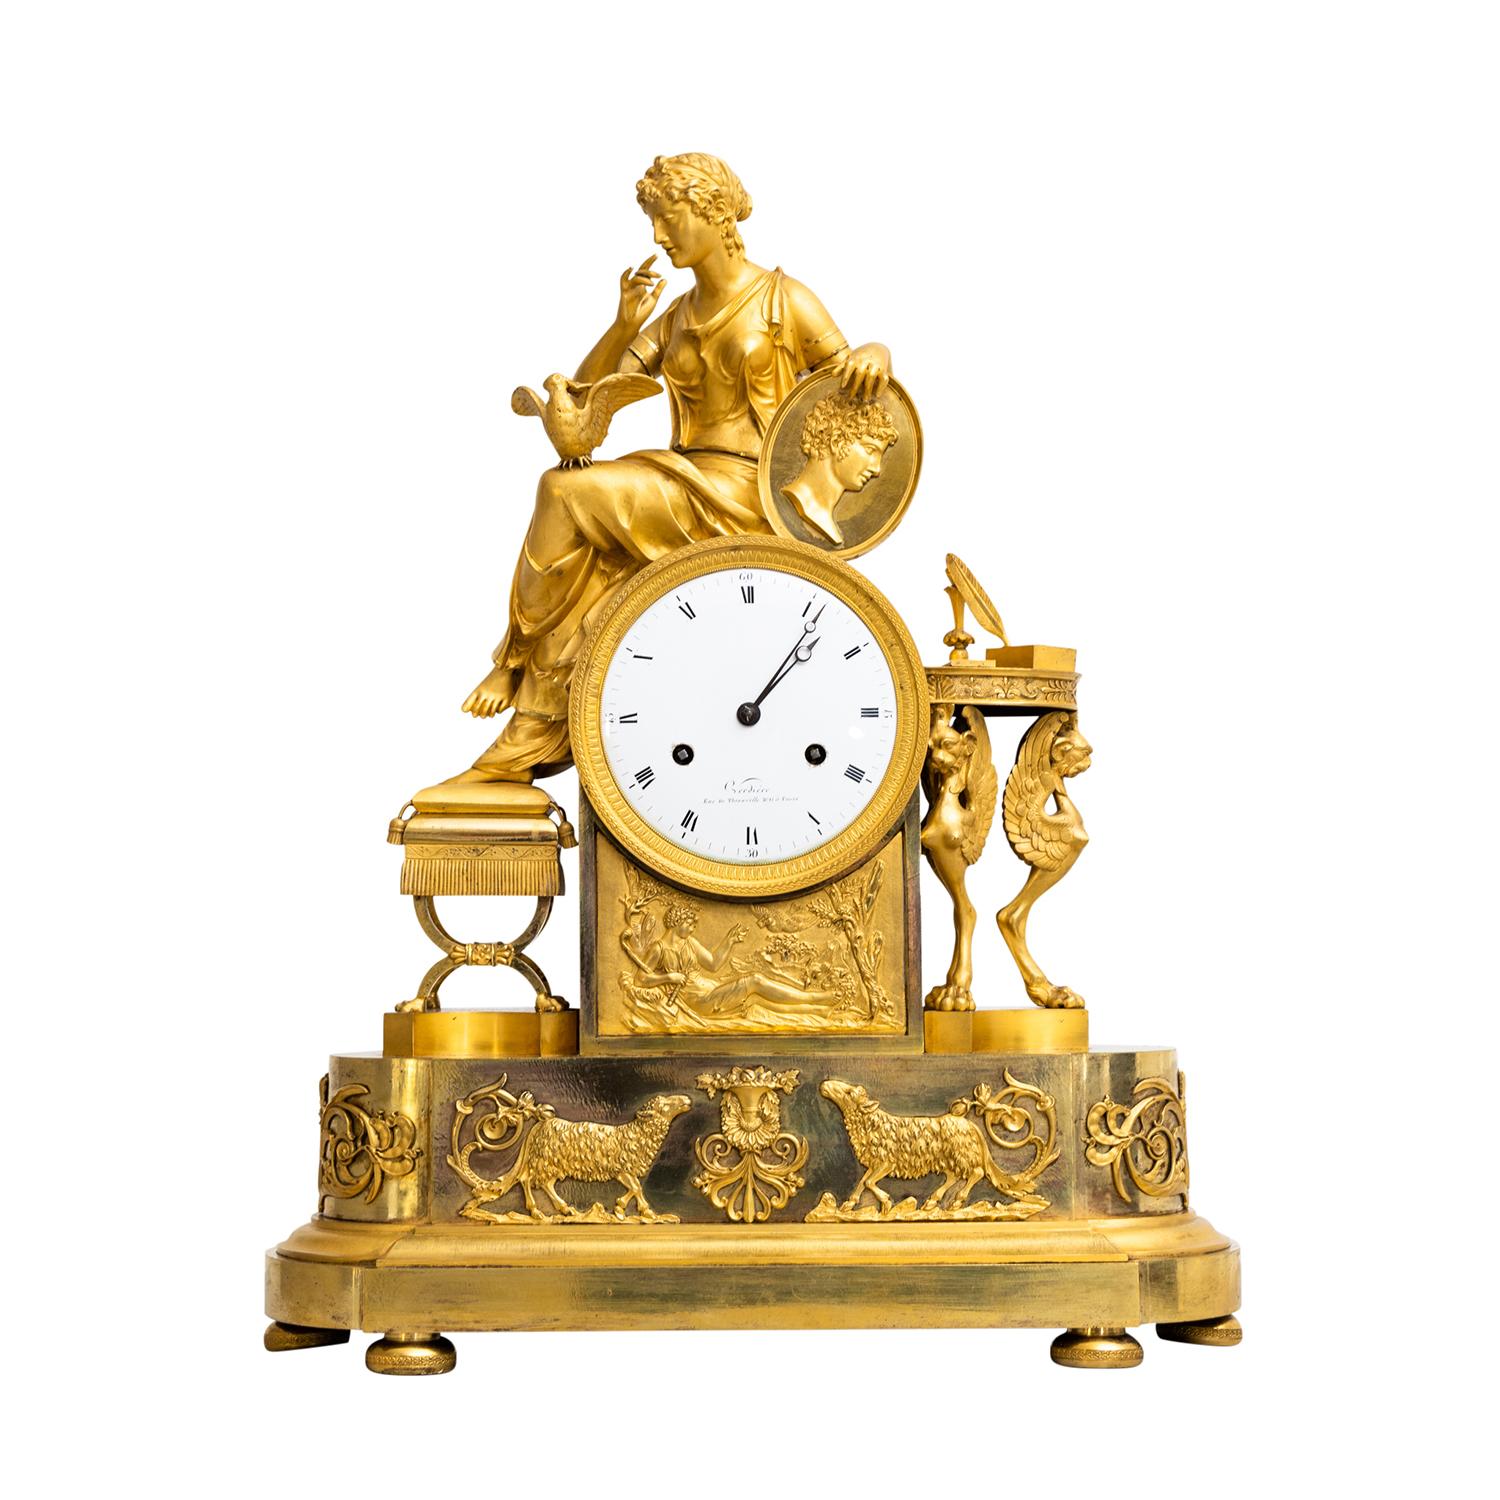 Eine goldene, antike französische Tischuhr, Pendel aus handgefertigter, feuervergoldeter Bronze, in gutem Zustand. Das runde Emailzifferblatt der Pariser Pendule ist mit römischen Ziffern und arabischen Viertelstundenzahlen auf weißem Grund